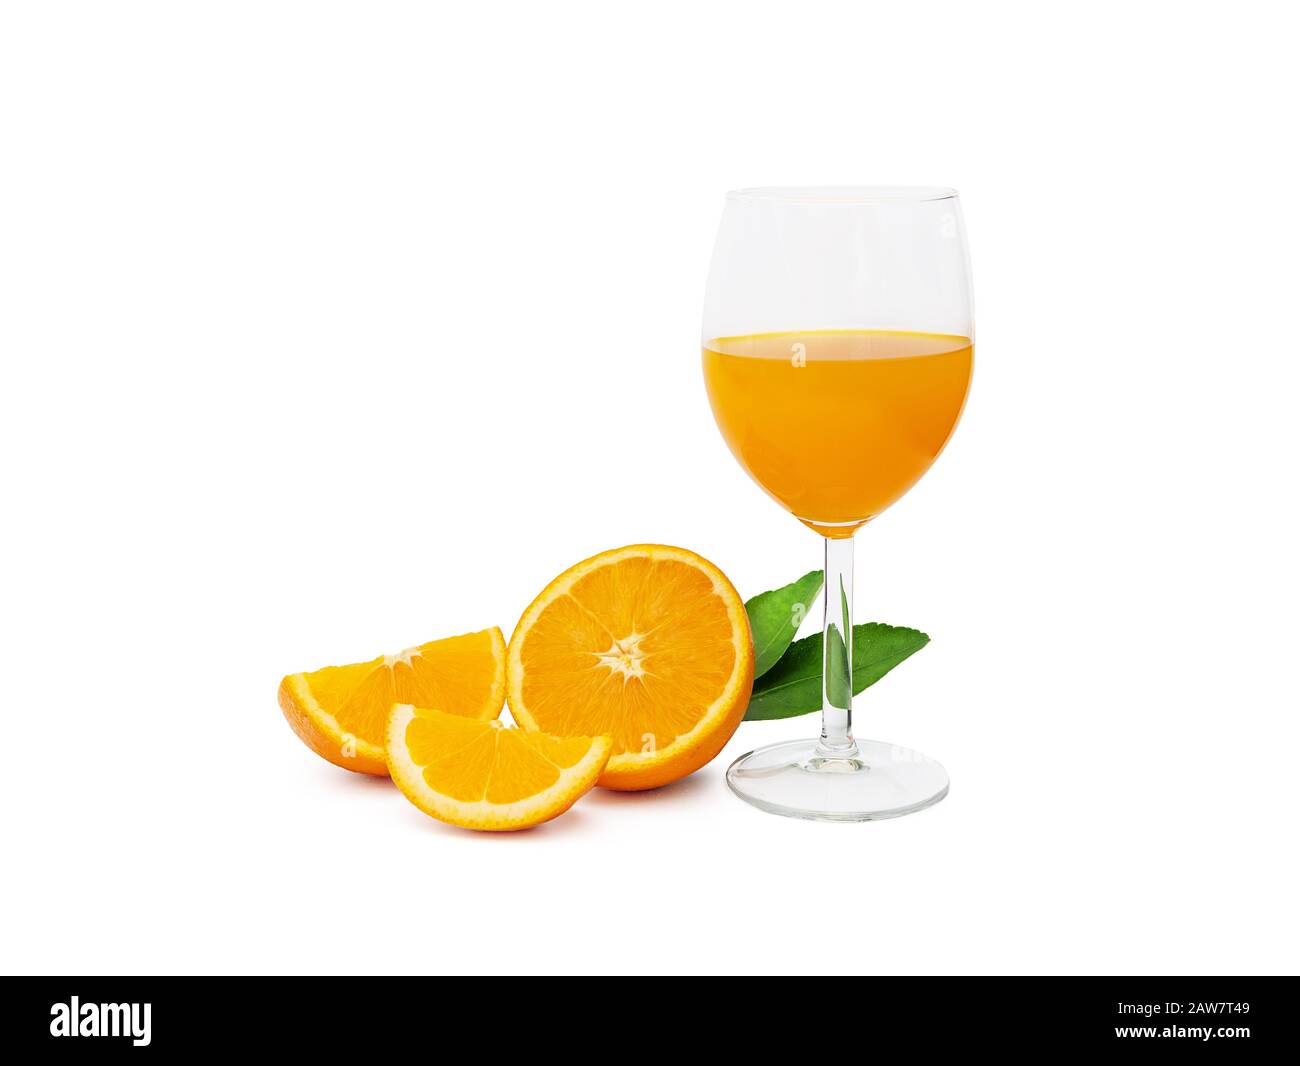 Ein Glas frischen Orangensaft und Gruppe von frischem Orange Früchte mit grünen Blättern, auf weißem Hintergrund, Beschneidungspfade gehören. Obst Produkt d Stockfoto